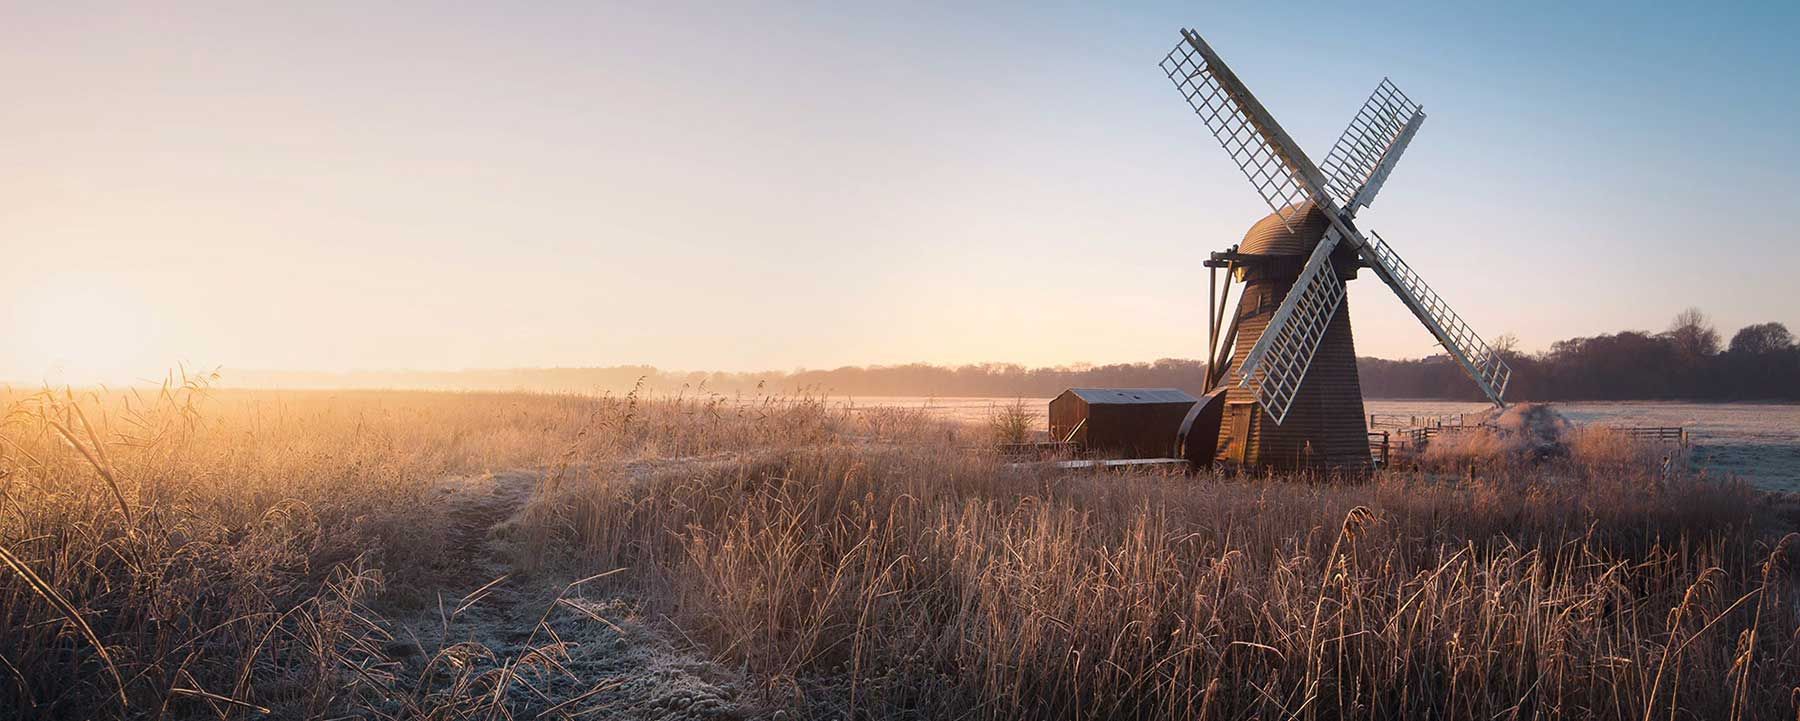 Windmill in winter landscape